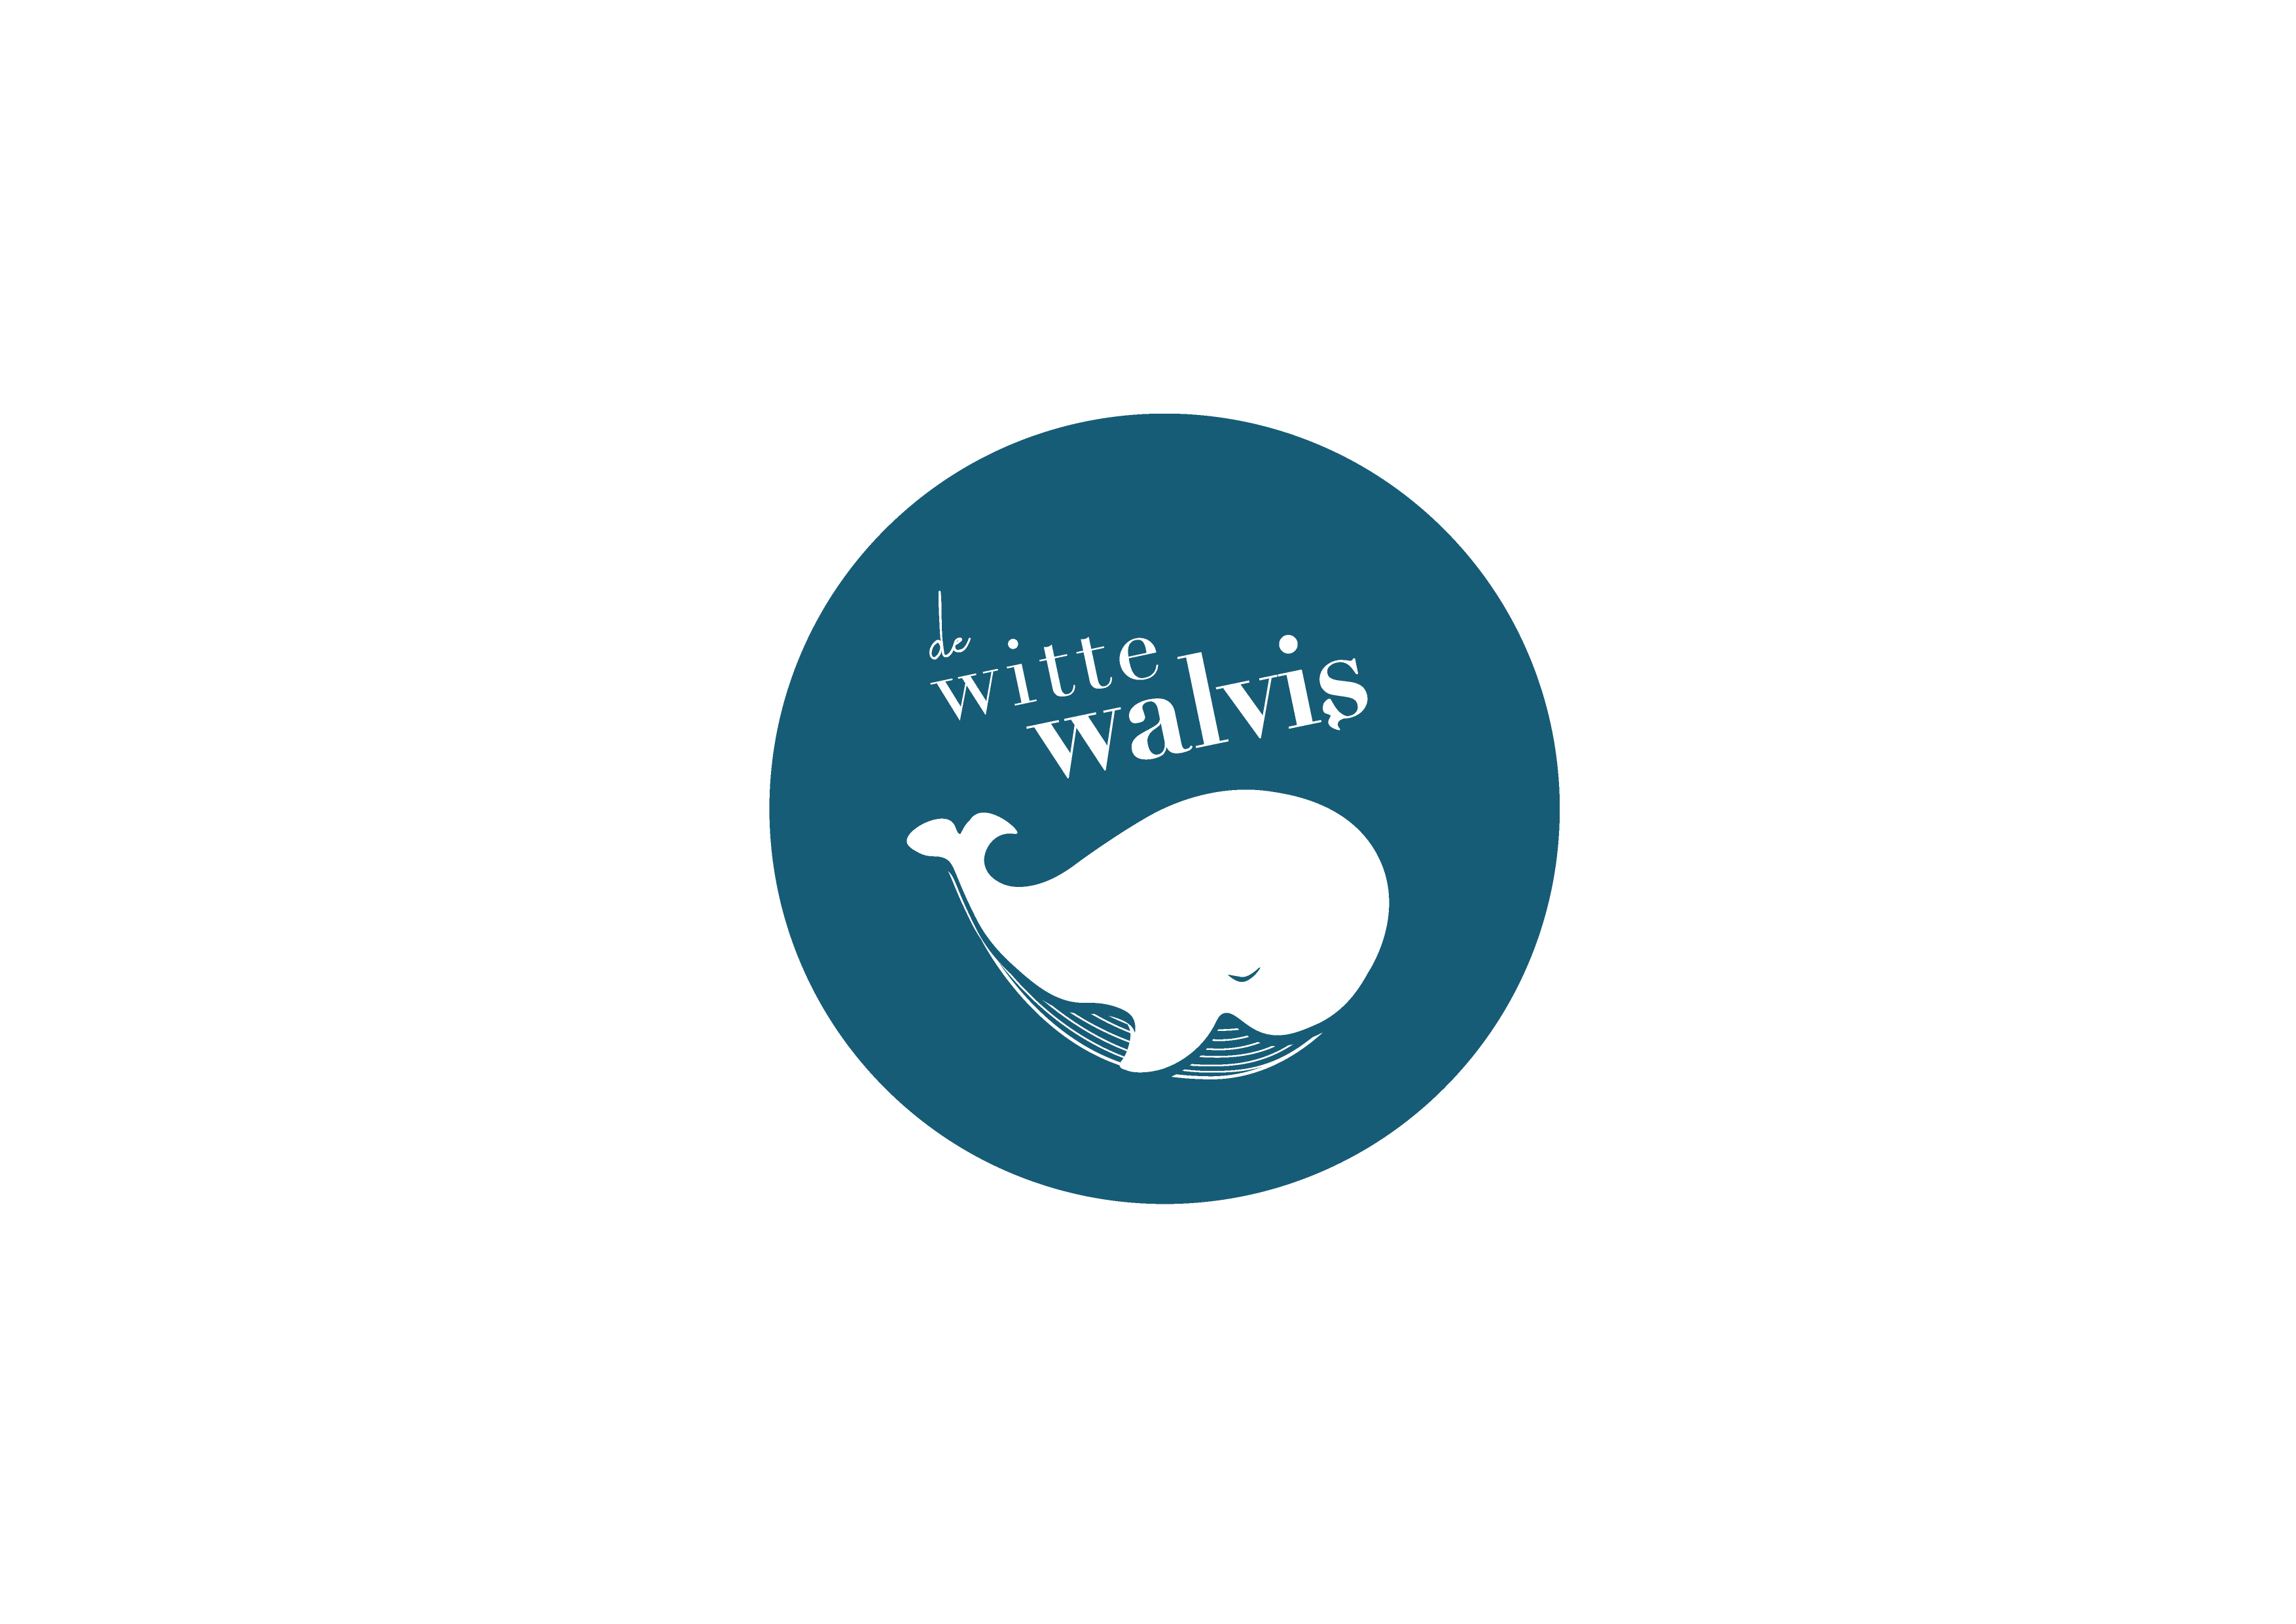 Ba’ Biek BV/De Witte Walvis